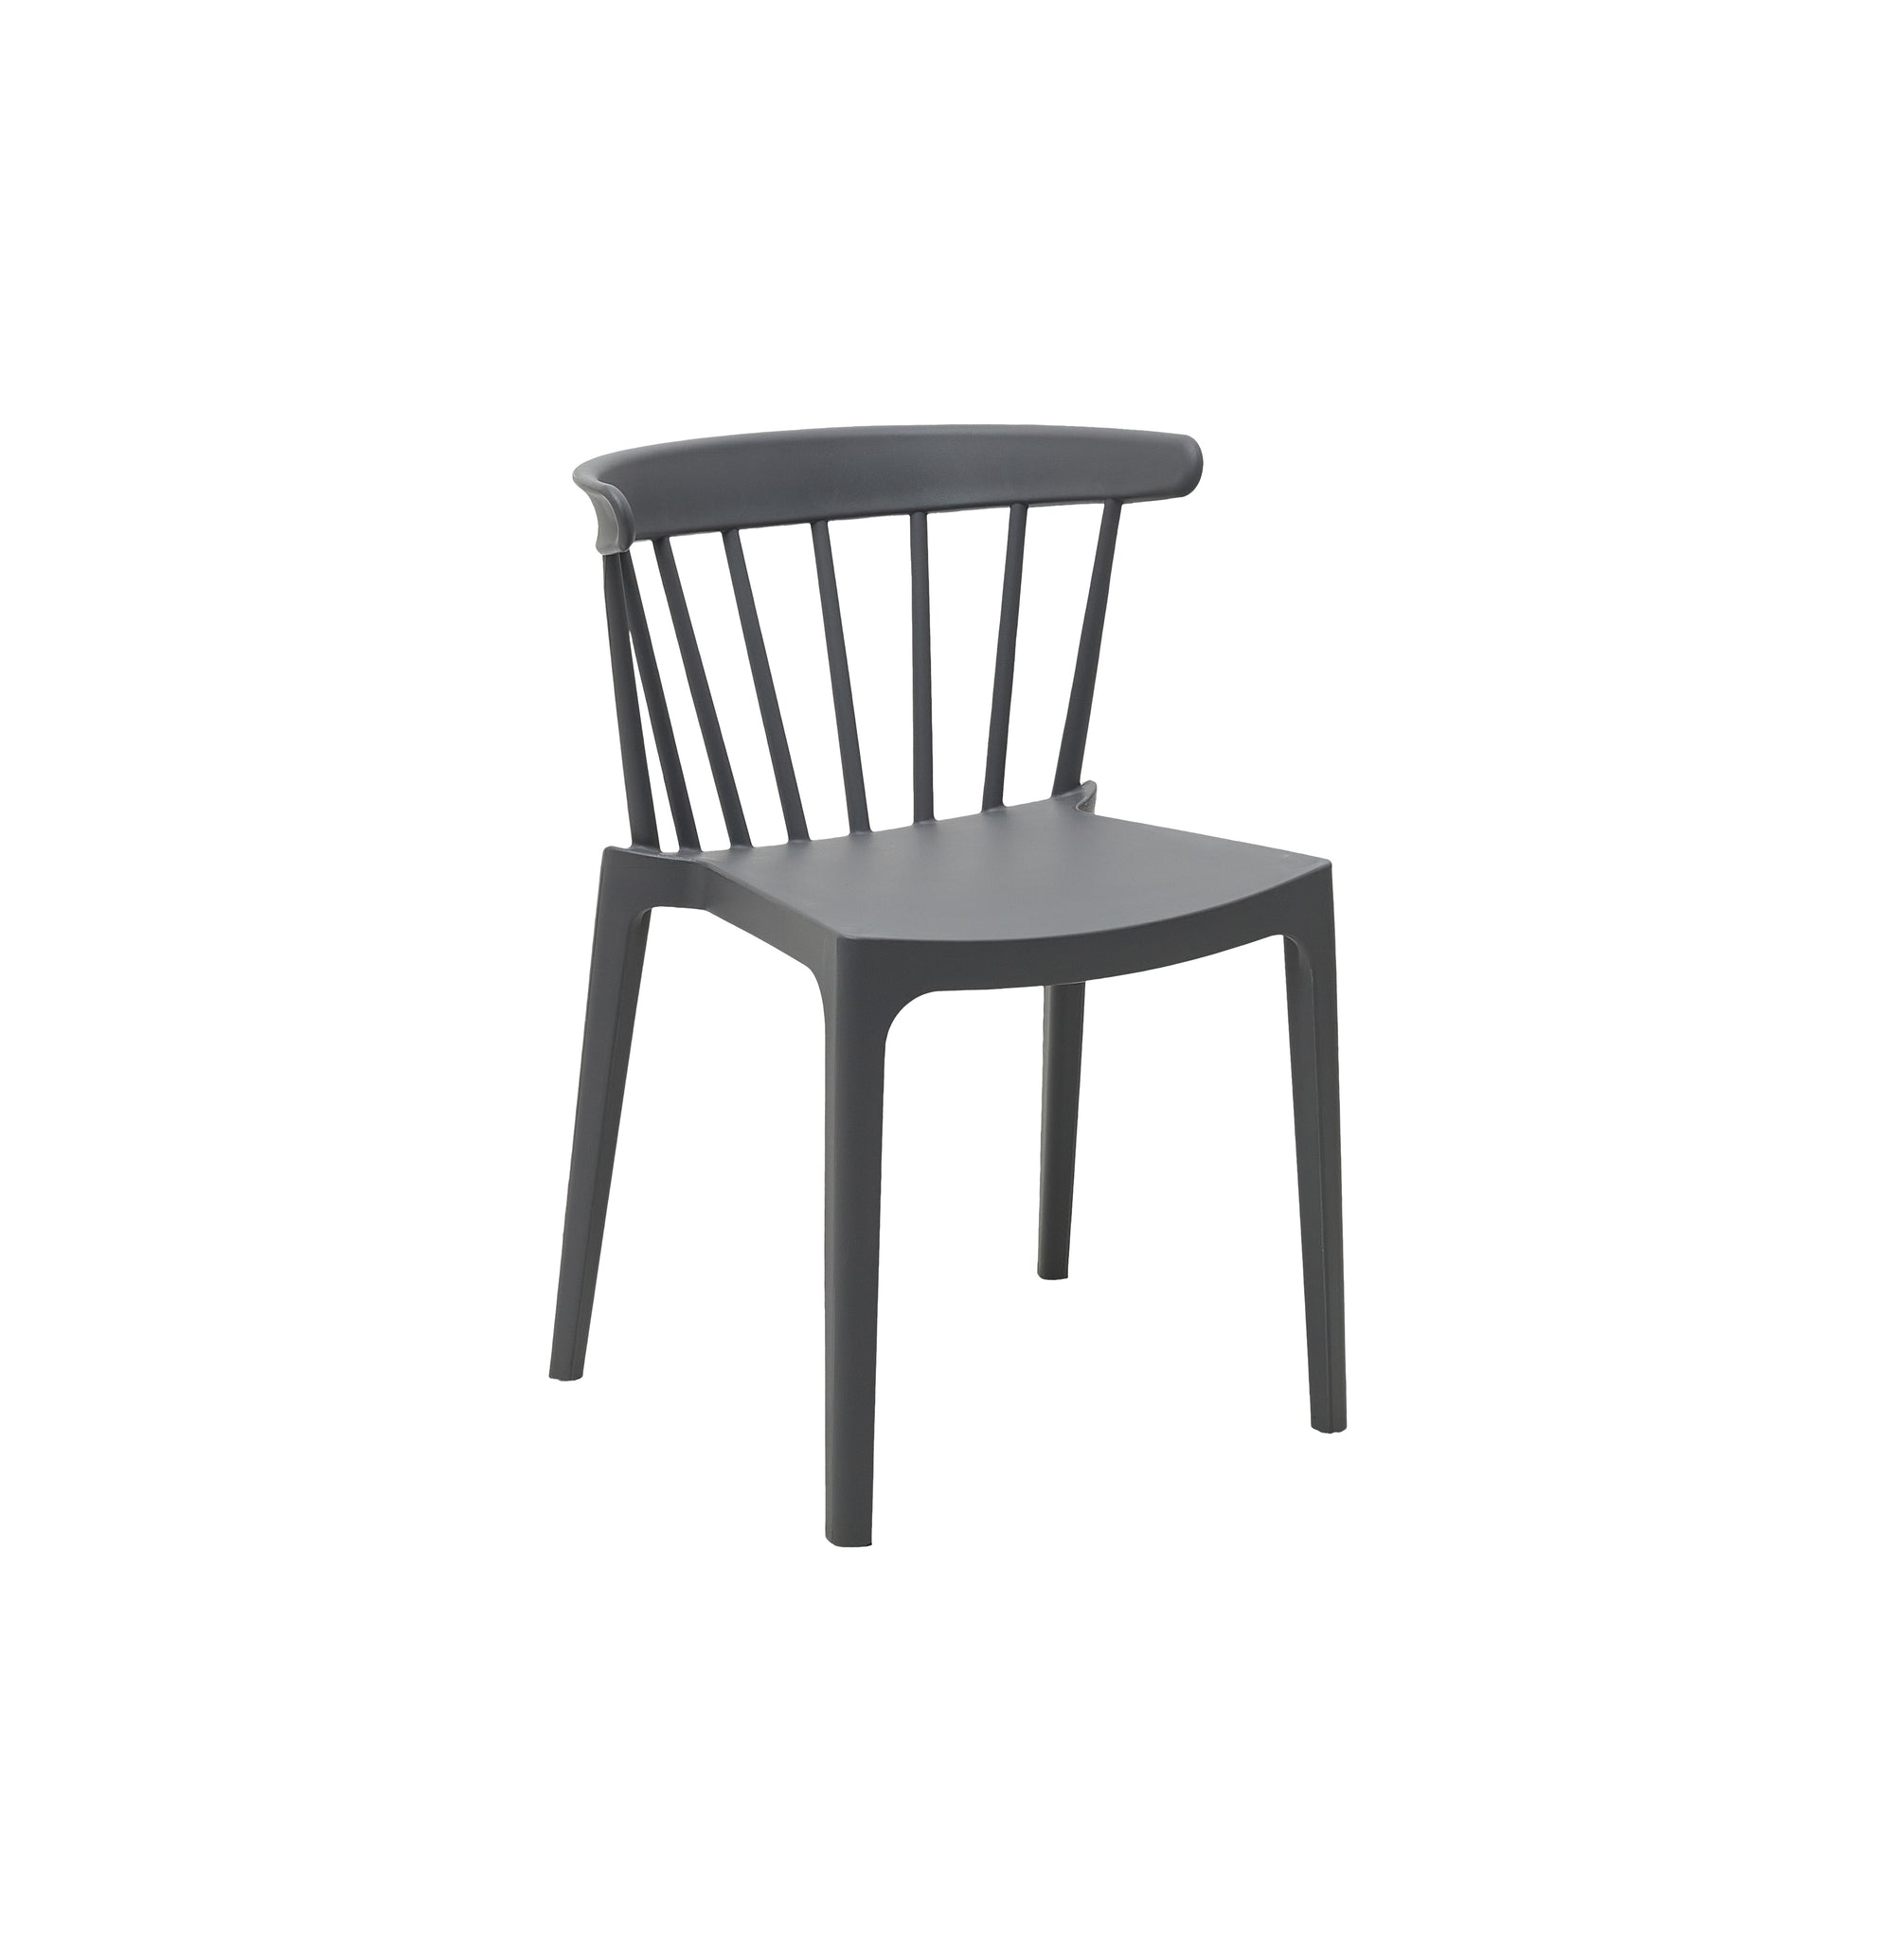 Seville PP Chair